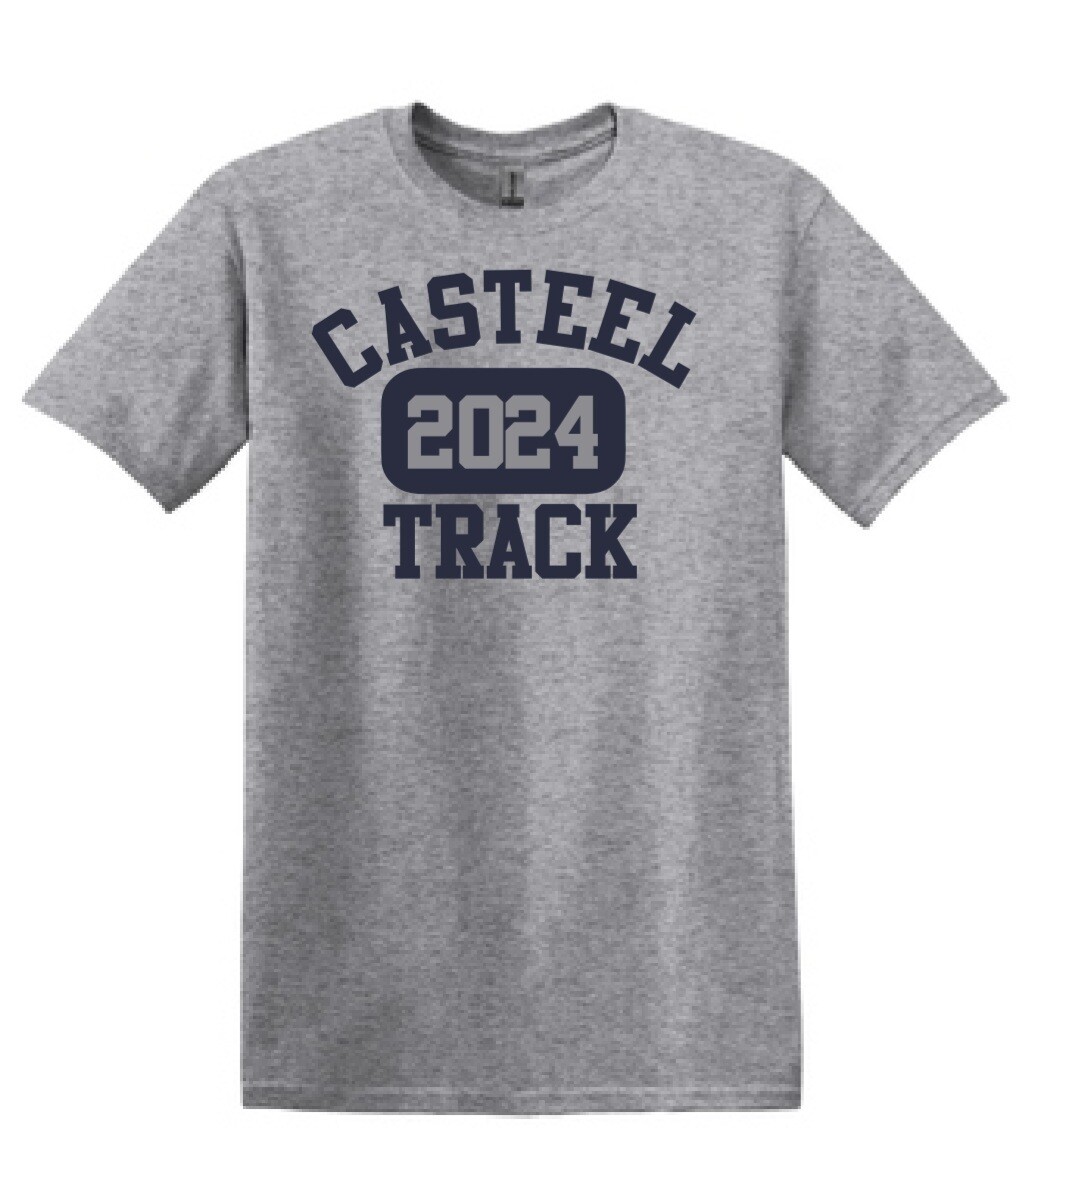 Casteel Track Unisex Tee